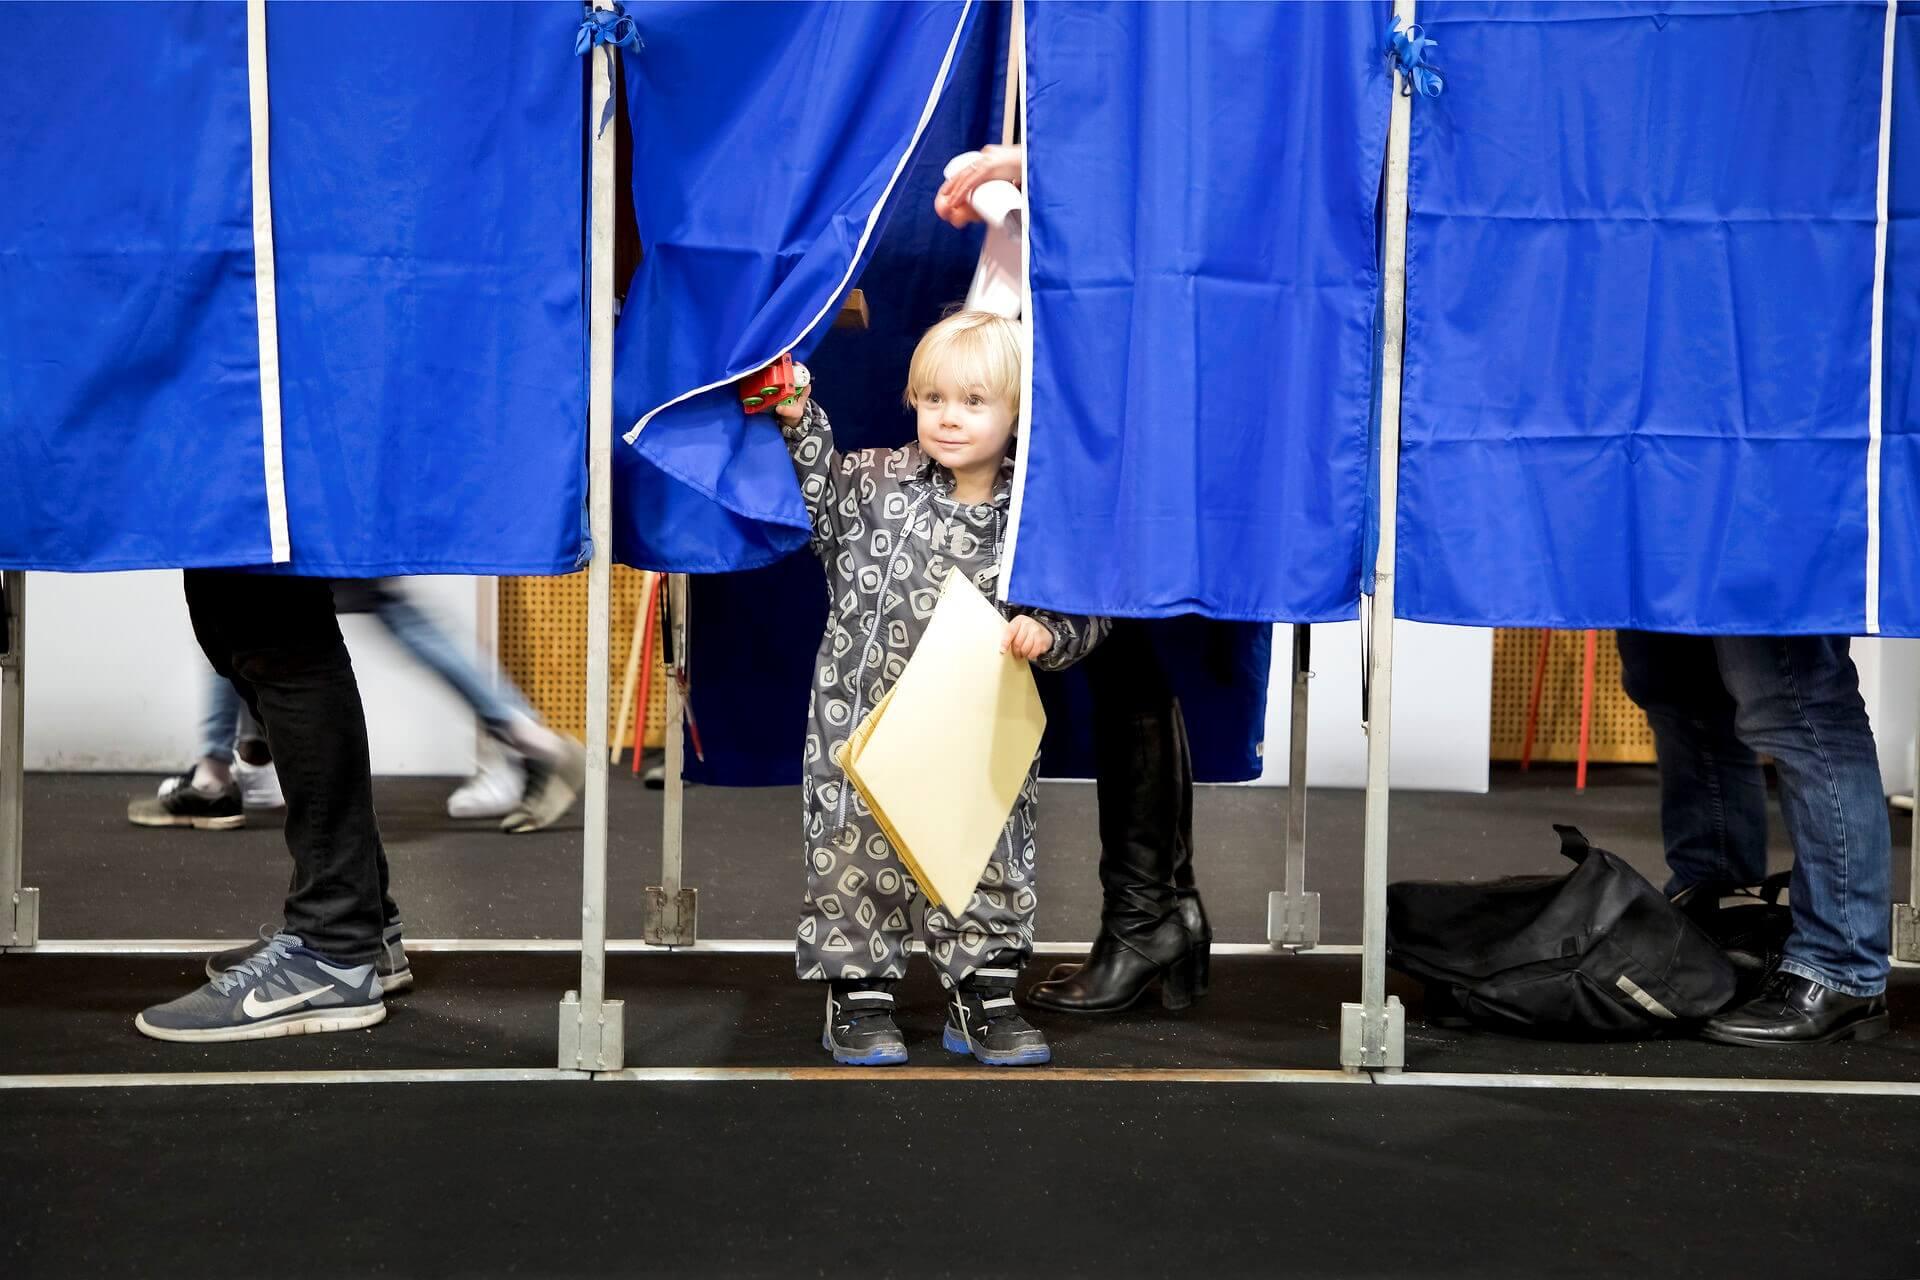 Der stemmes ved kommunalvalget i 2017 på Brønshøj Skole. En mor har taget en næste generation vælger med. Og det virker.